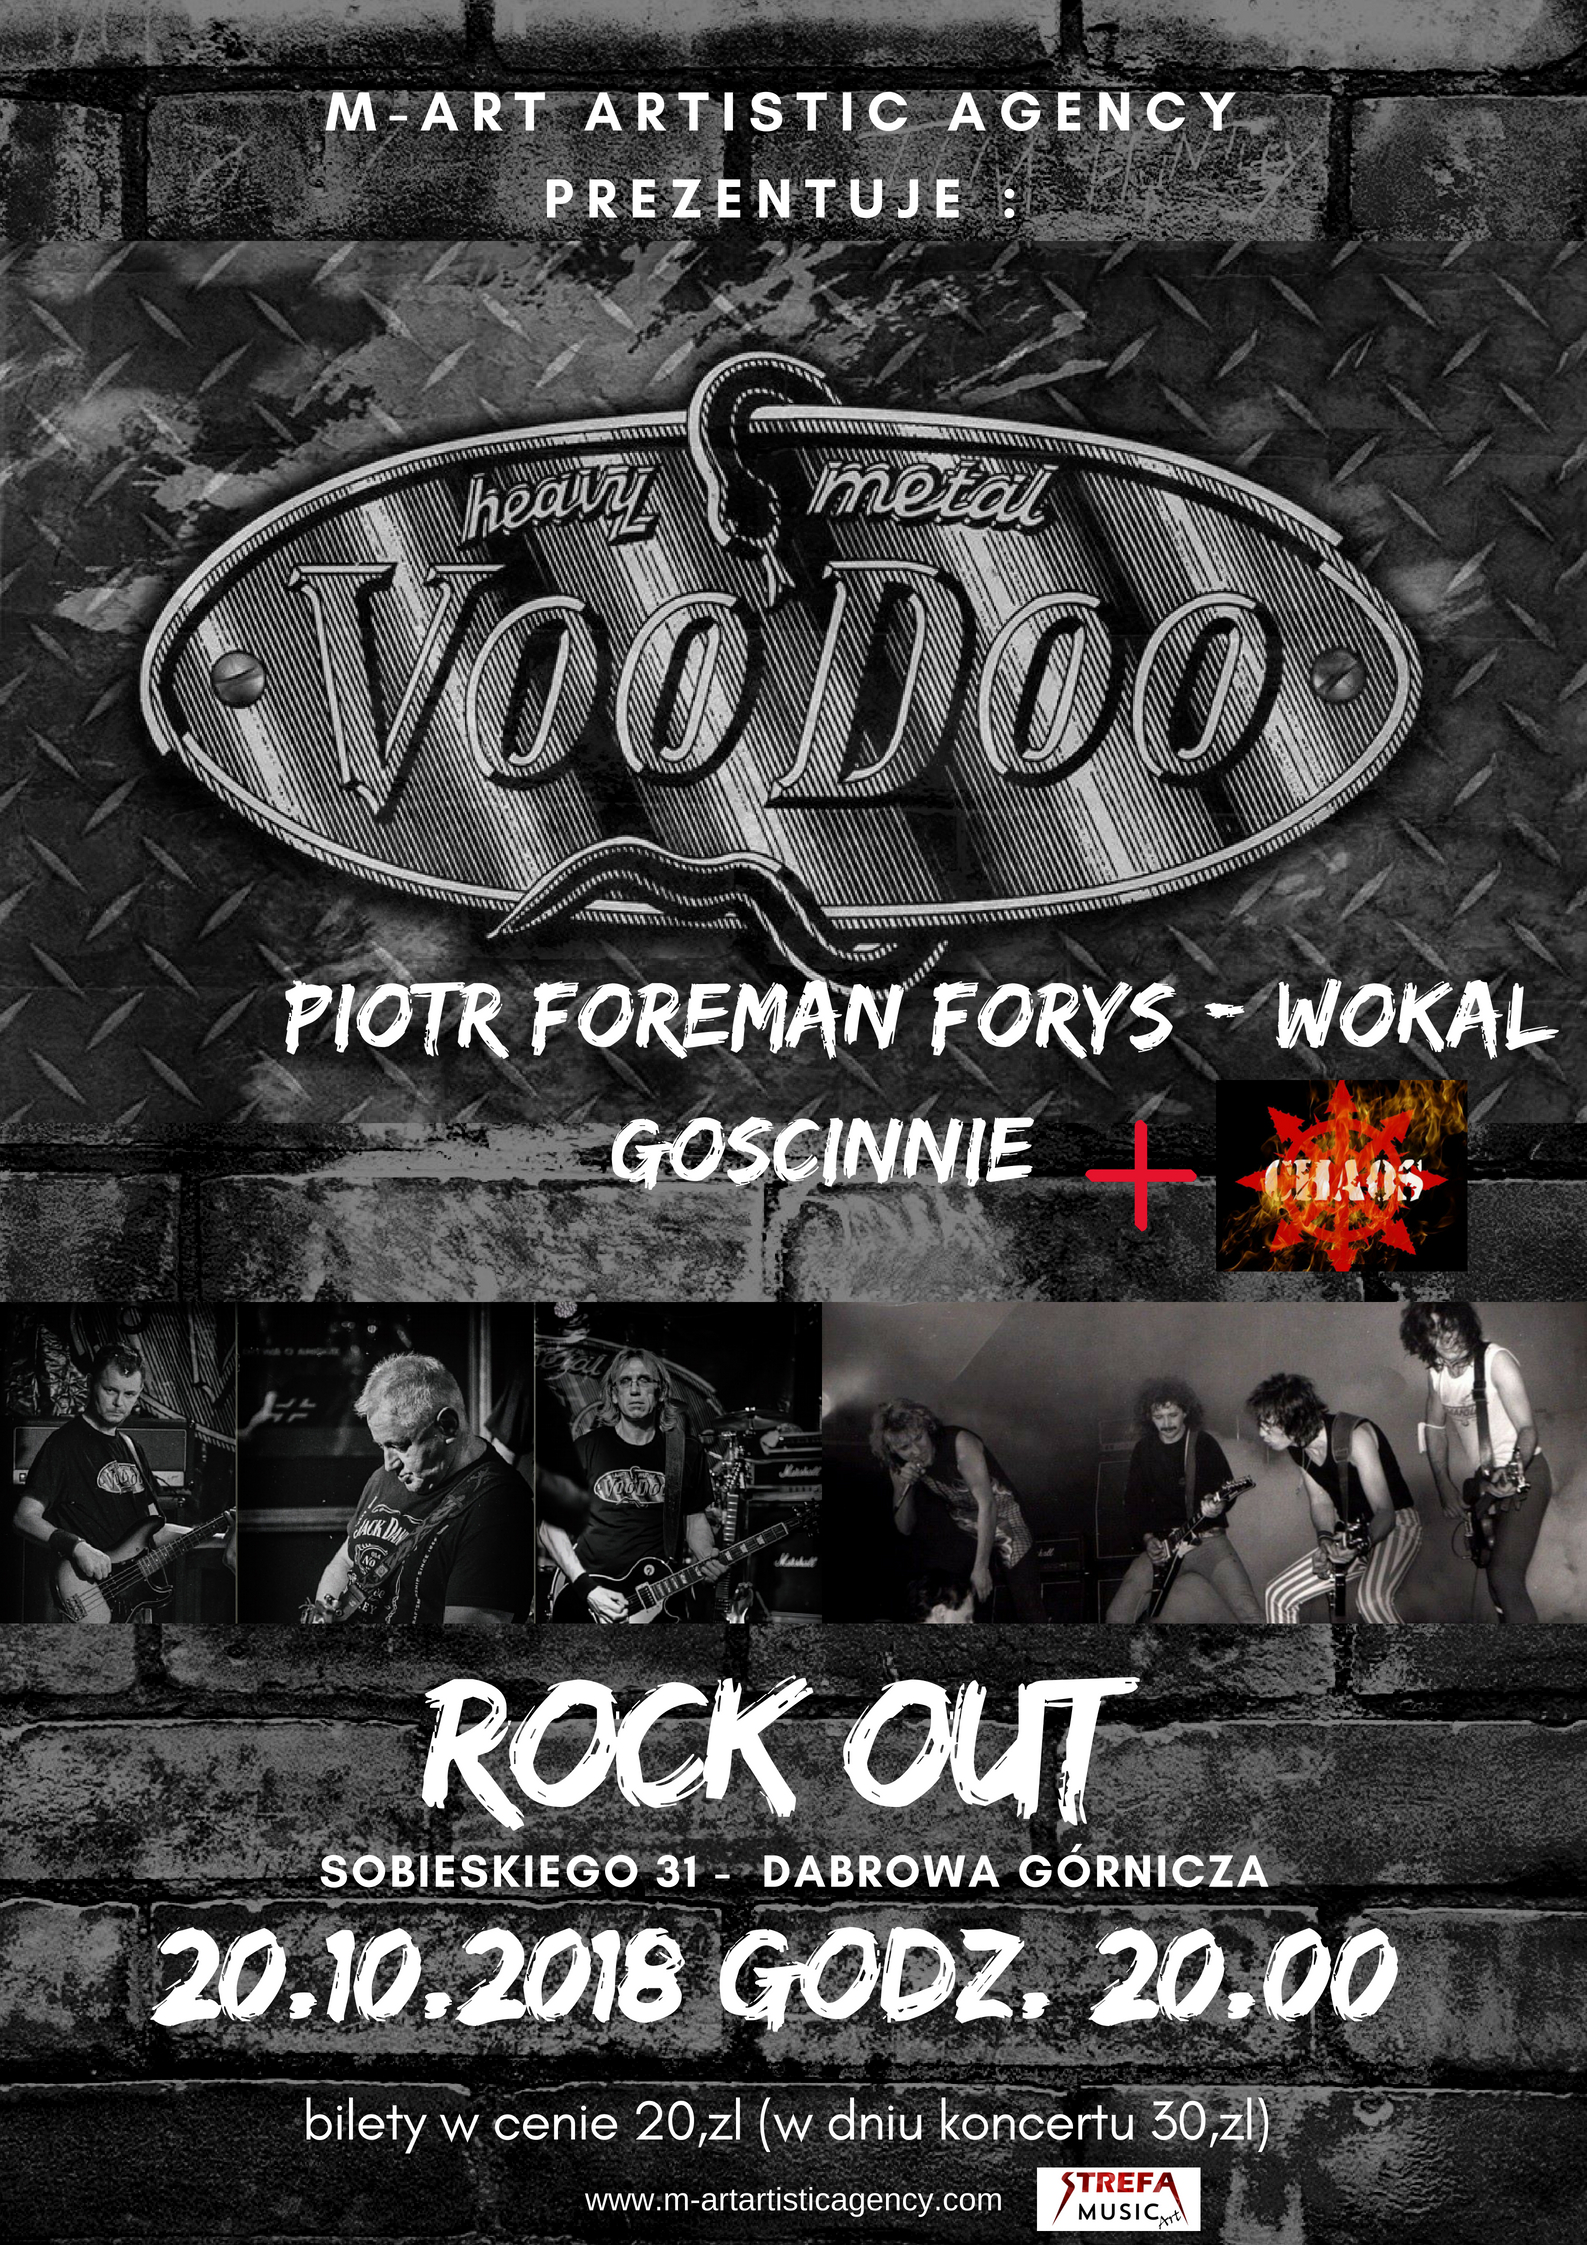 Zapraszamy na heavy metalową noc z grupą VOODOO i jej gośćmi w Rock Out